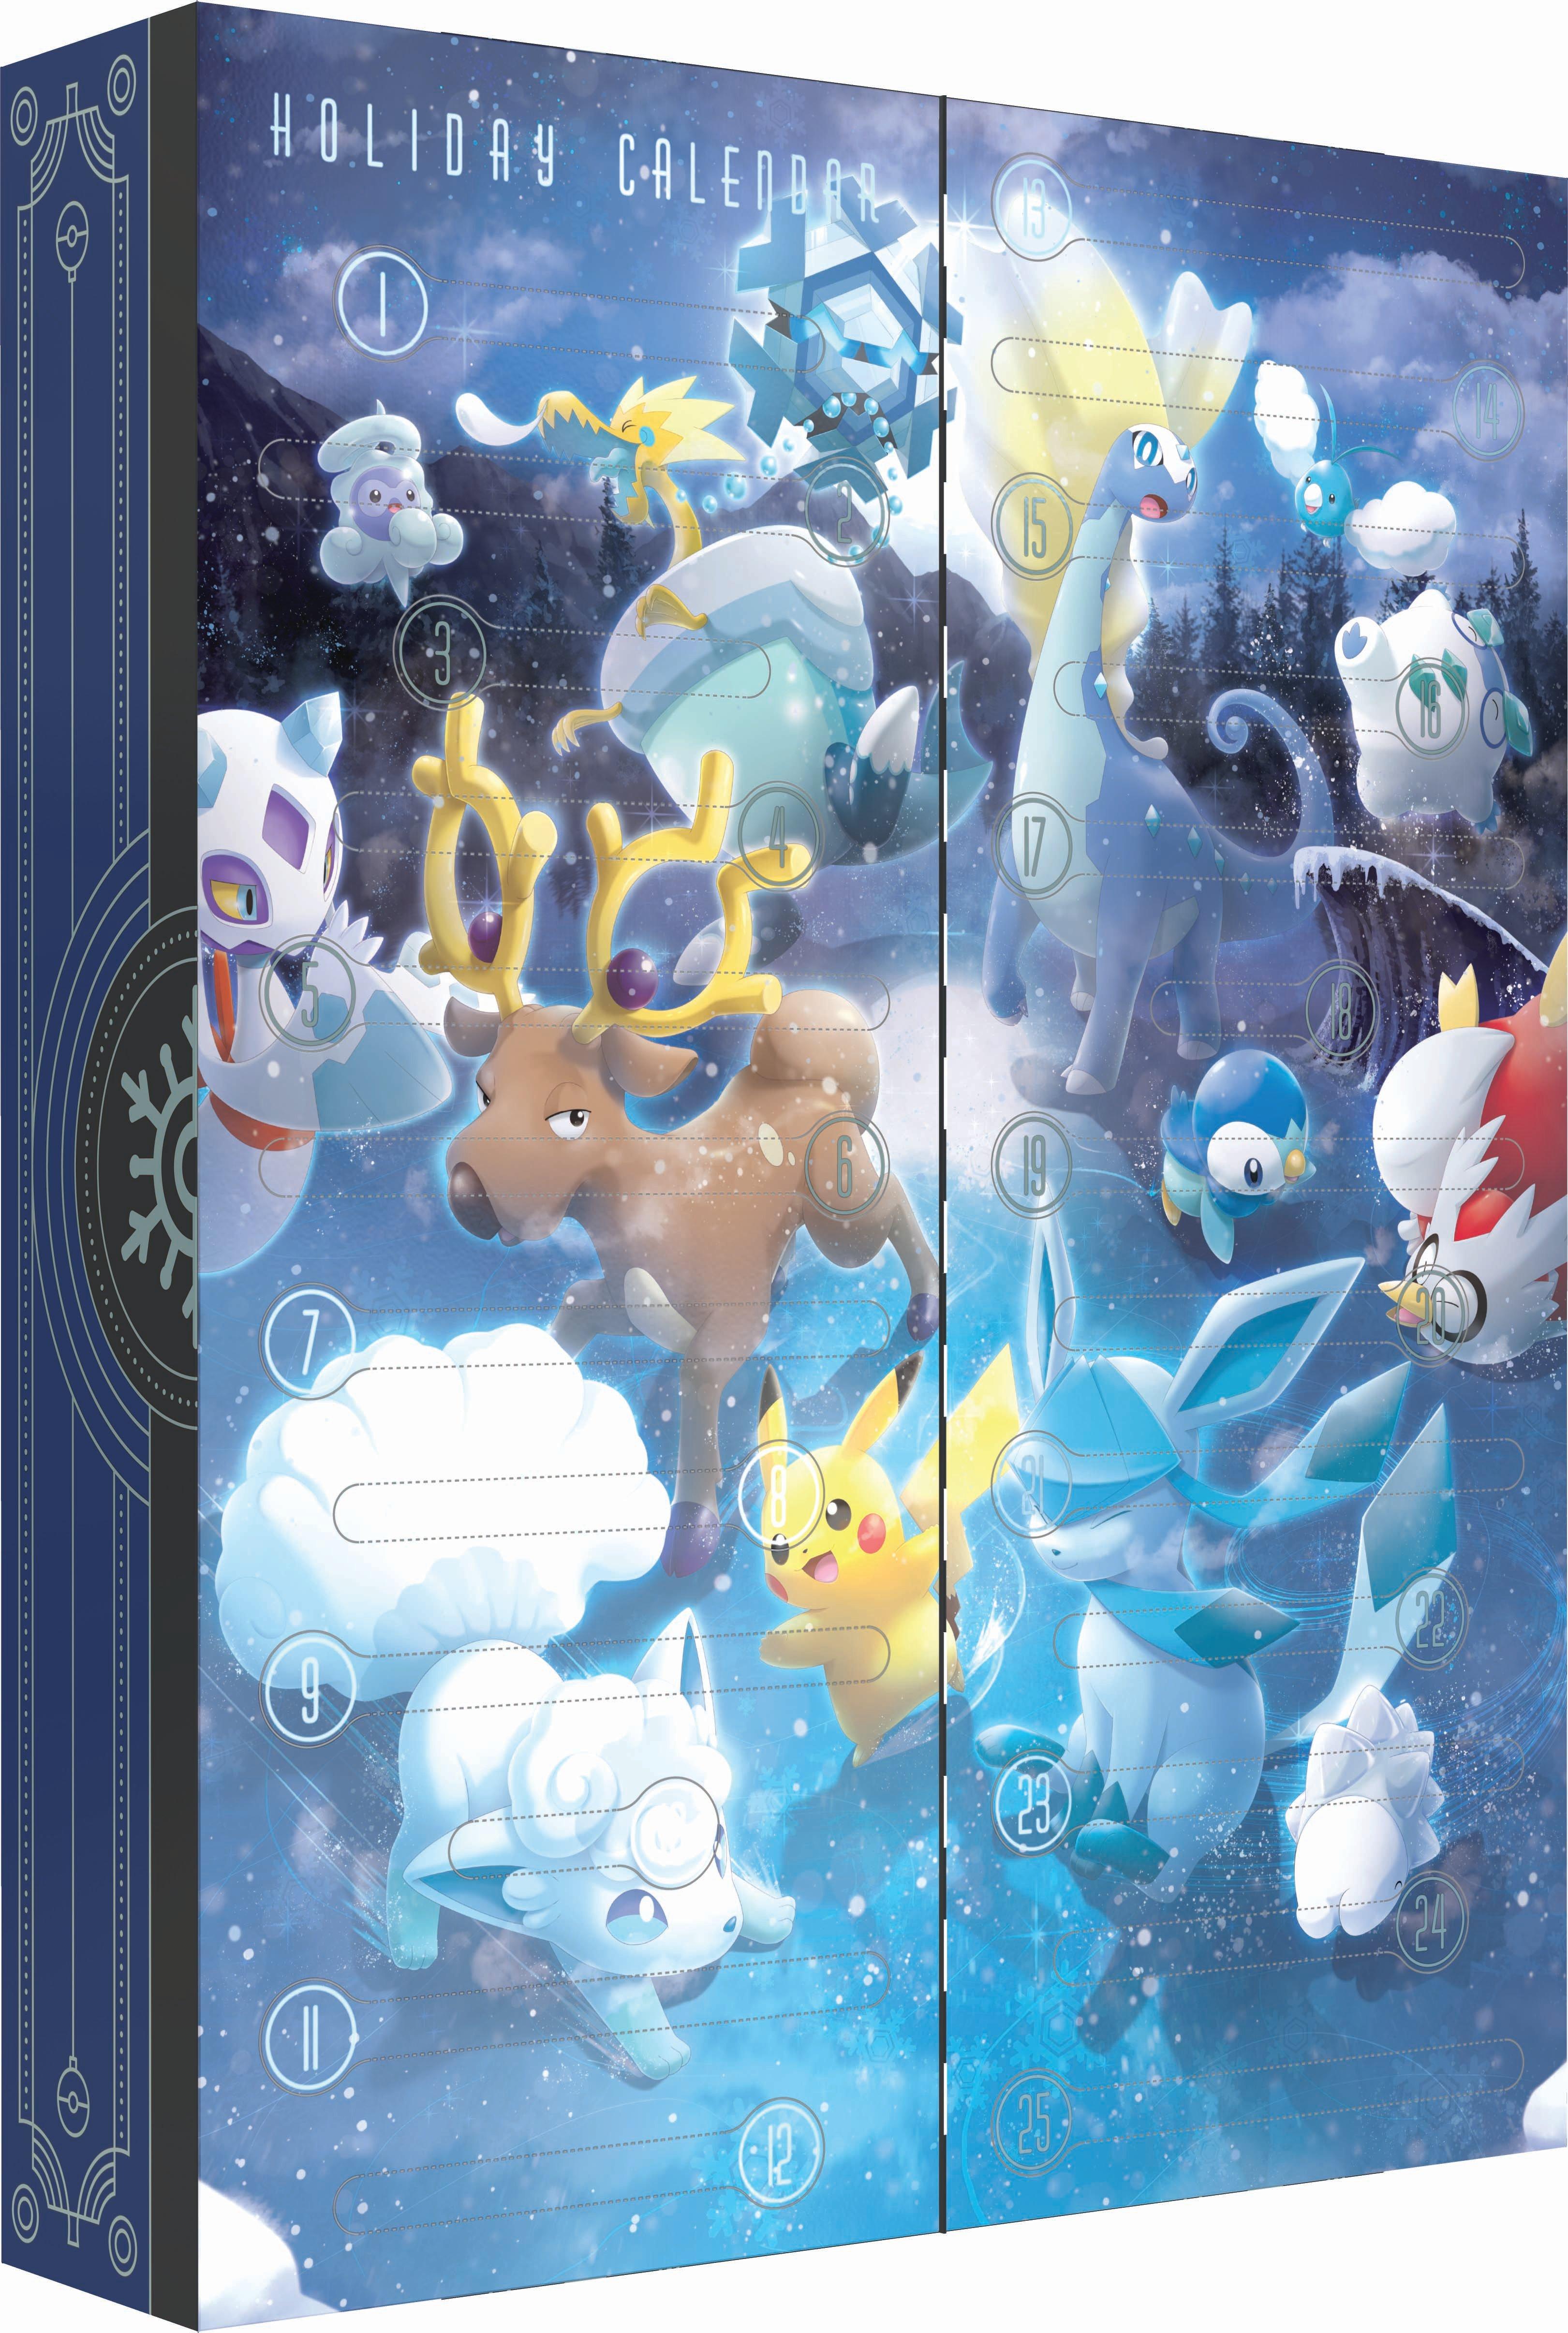 Pokémon TCG: Holiday Calendar (2023)